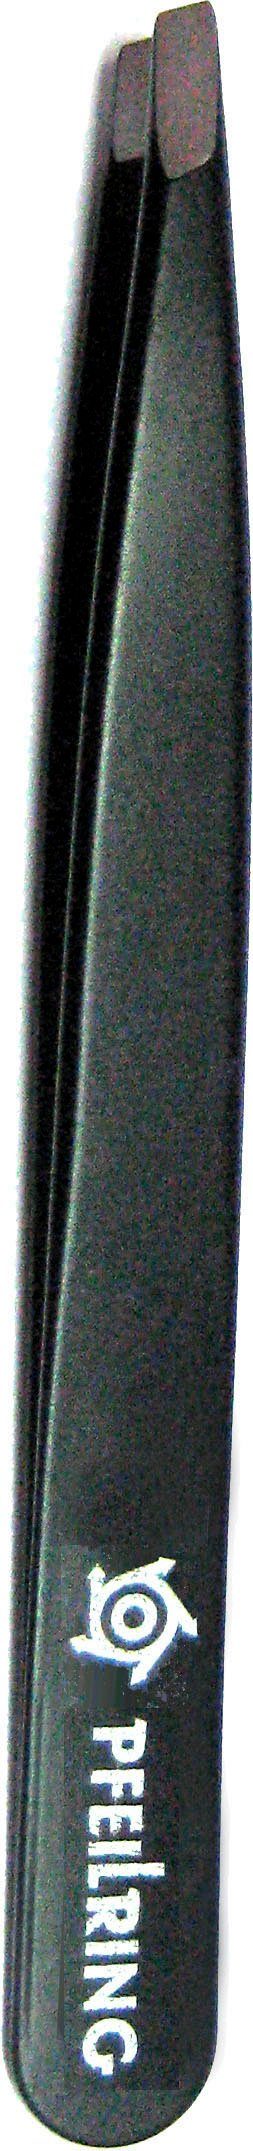 Pinzette, rostfrei schwarz 9,7cm, PFEILRING